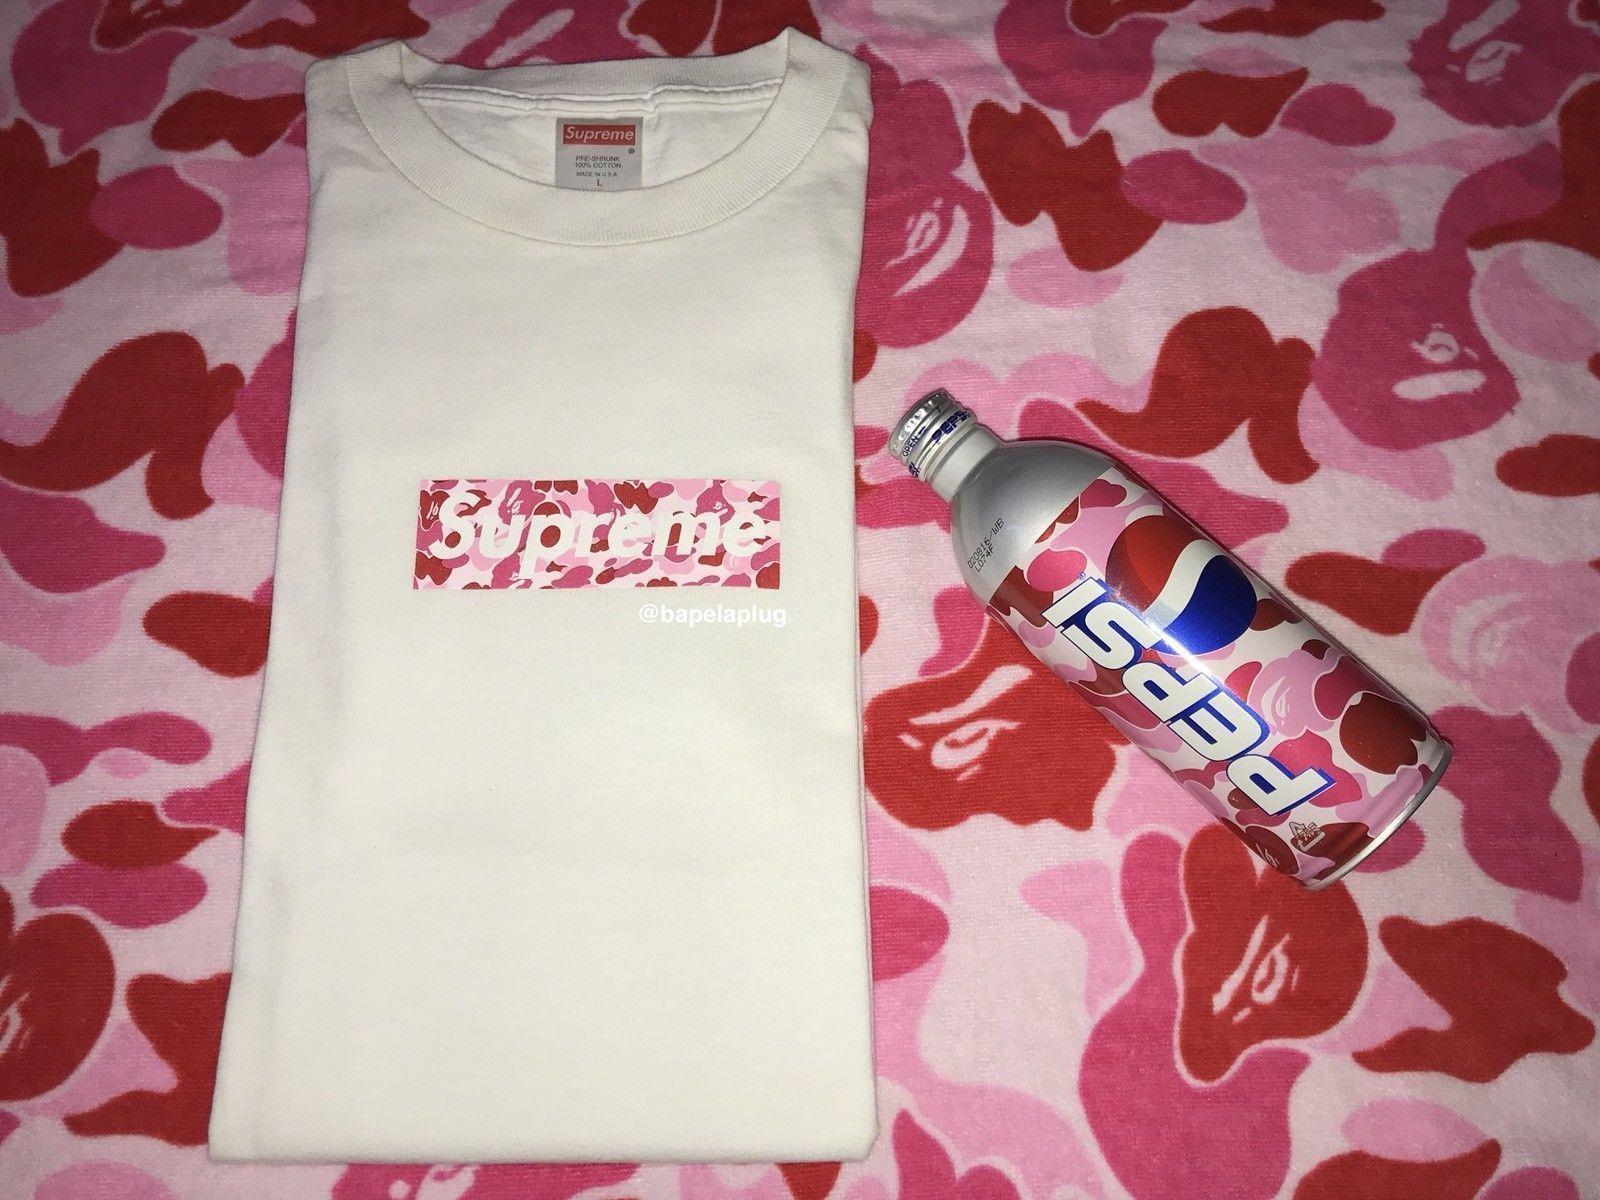 Camo BAPE Box Logo - Details about SUPREME x BAPE Pink ABC Camo Box Logo T-shirt WHITE L ...